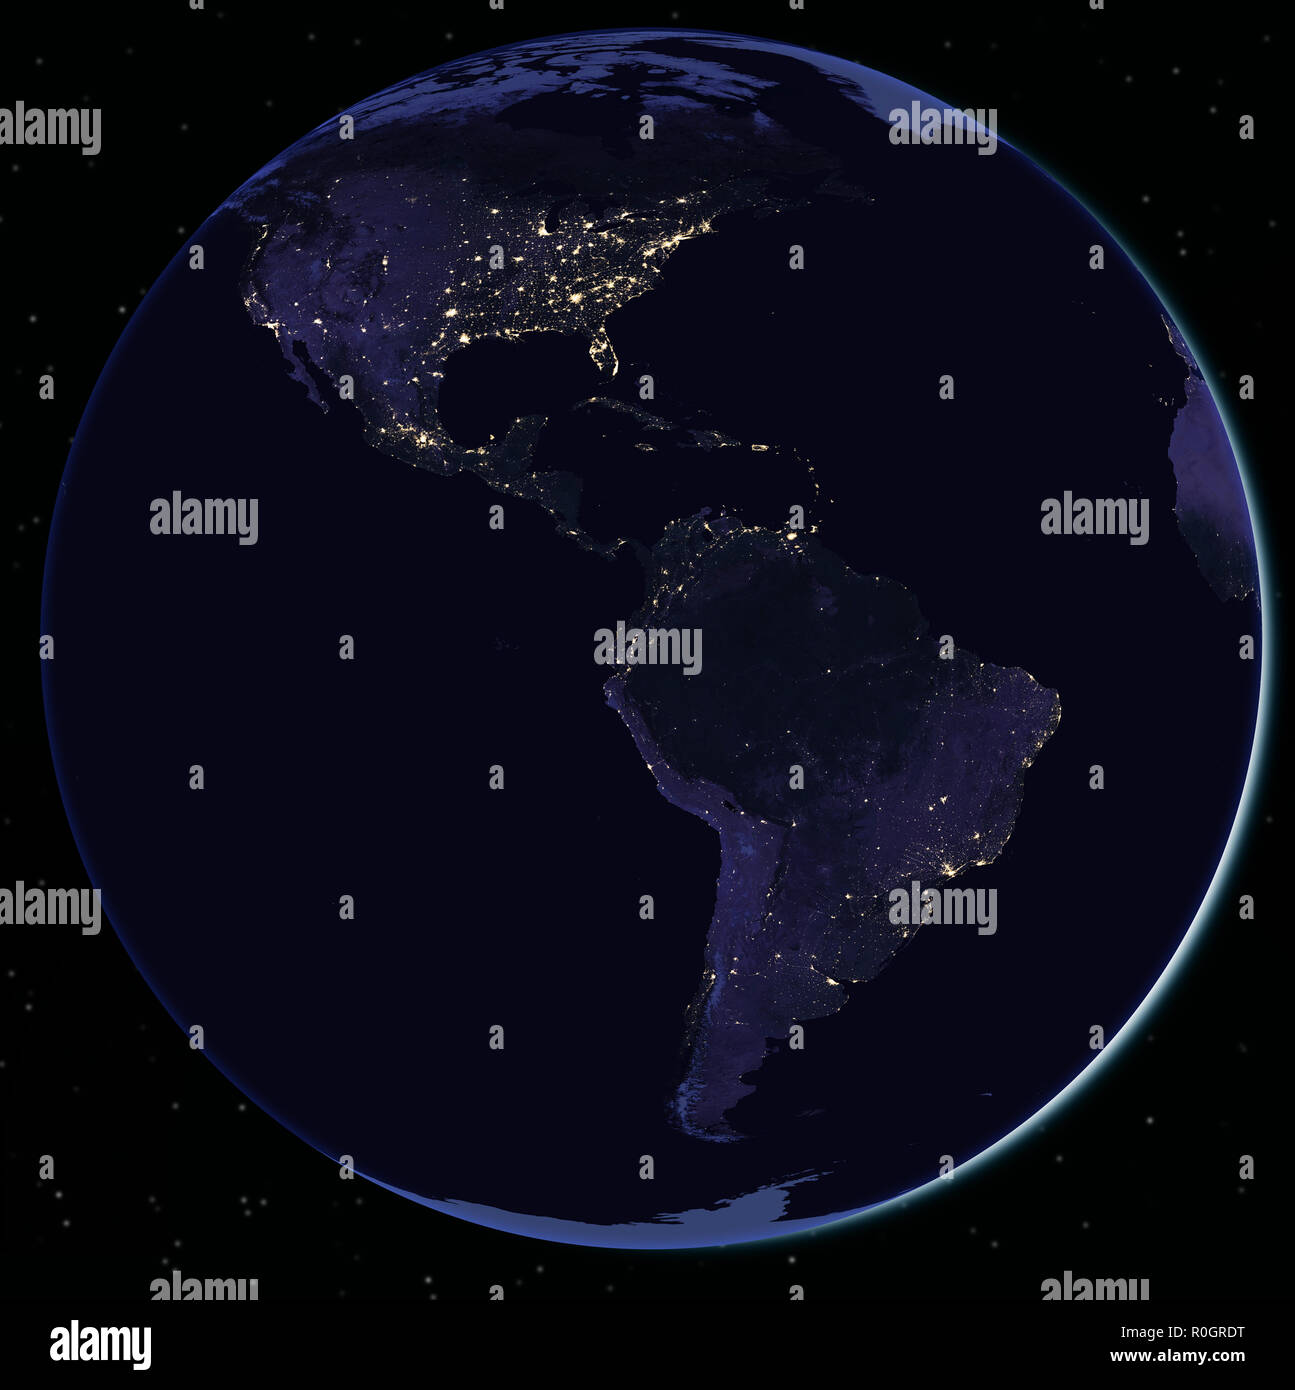 Nord- und Südamerika in der Nacht vom Weltraum aus gesehen - Elemente dieses Bild von der Nasa eingerichtet Stockfoto